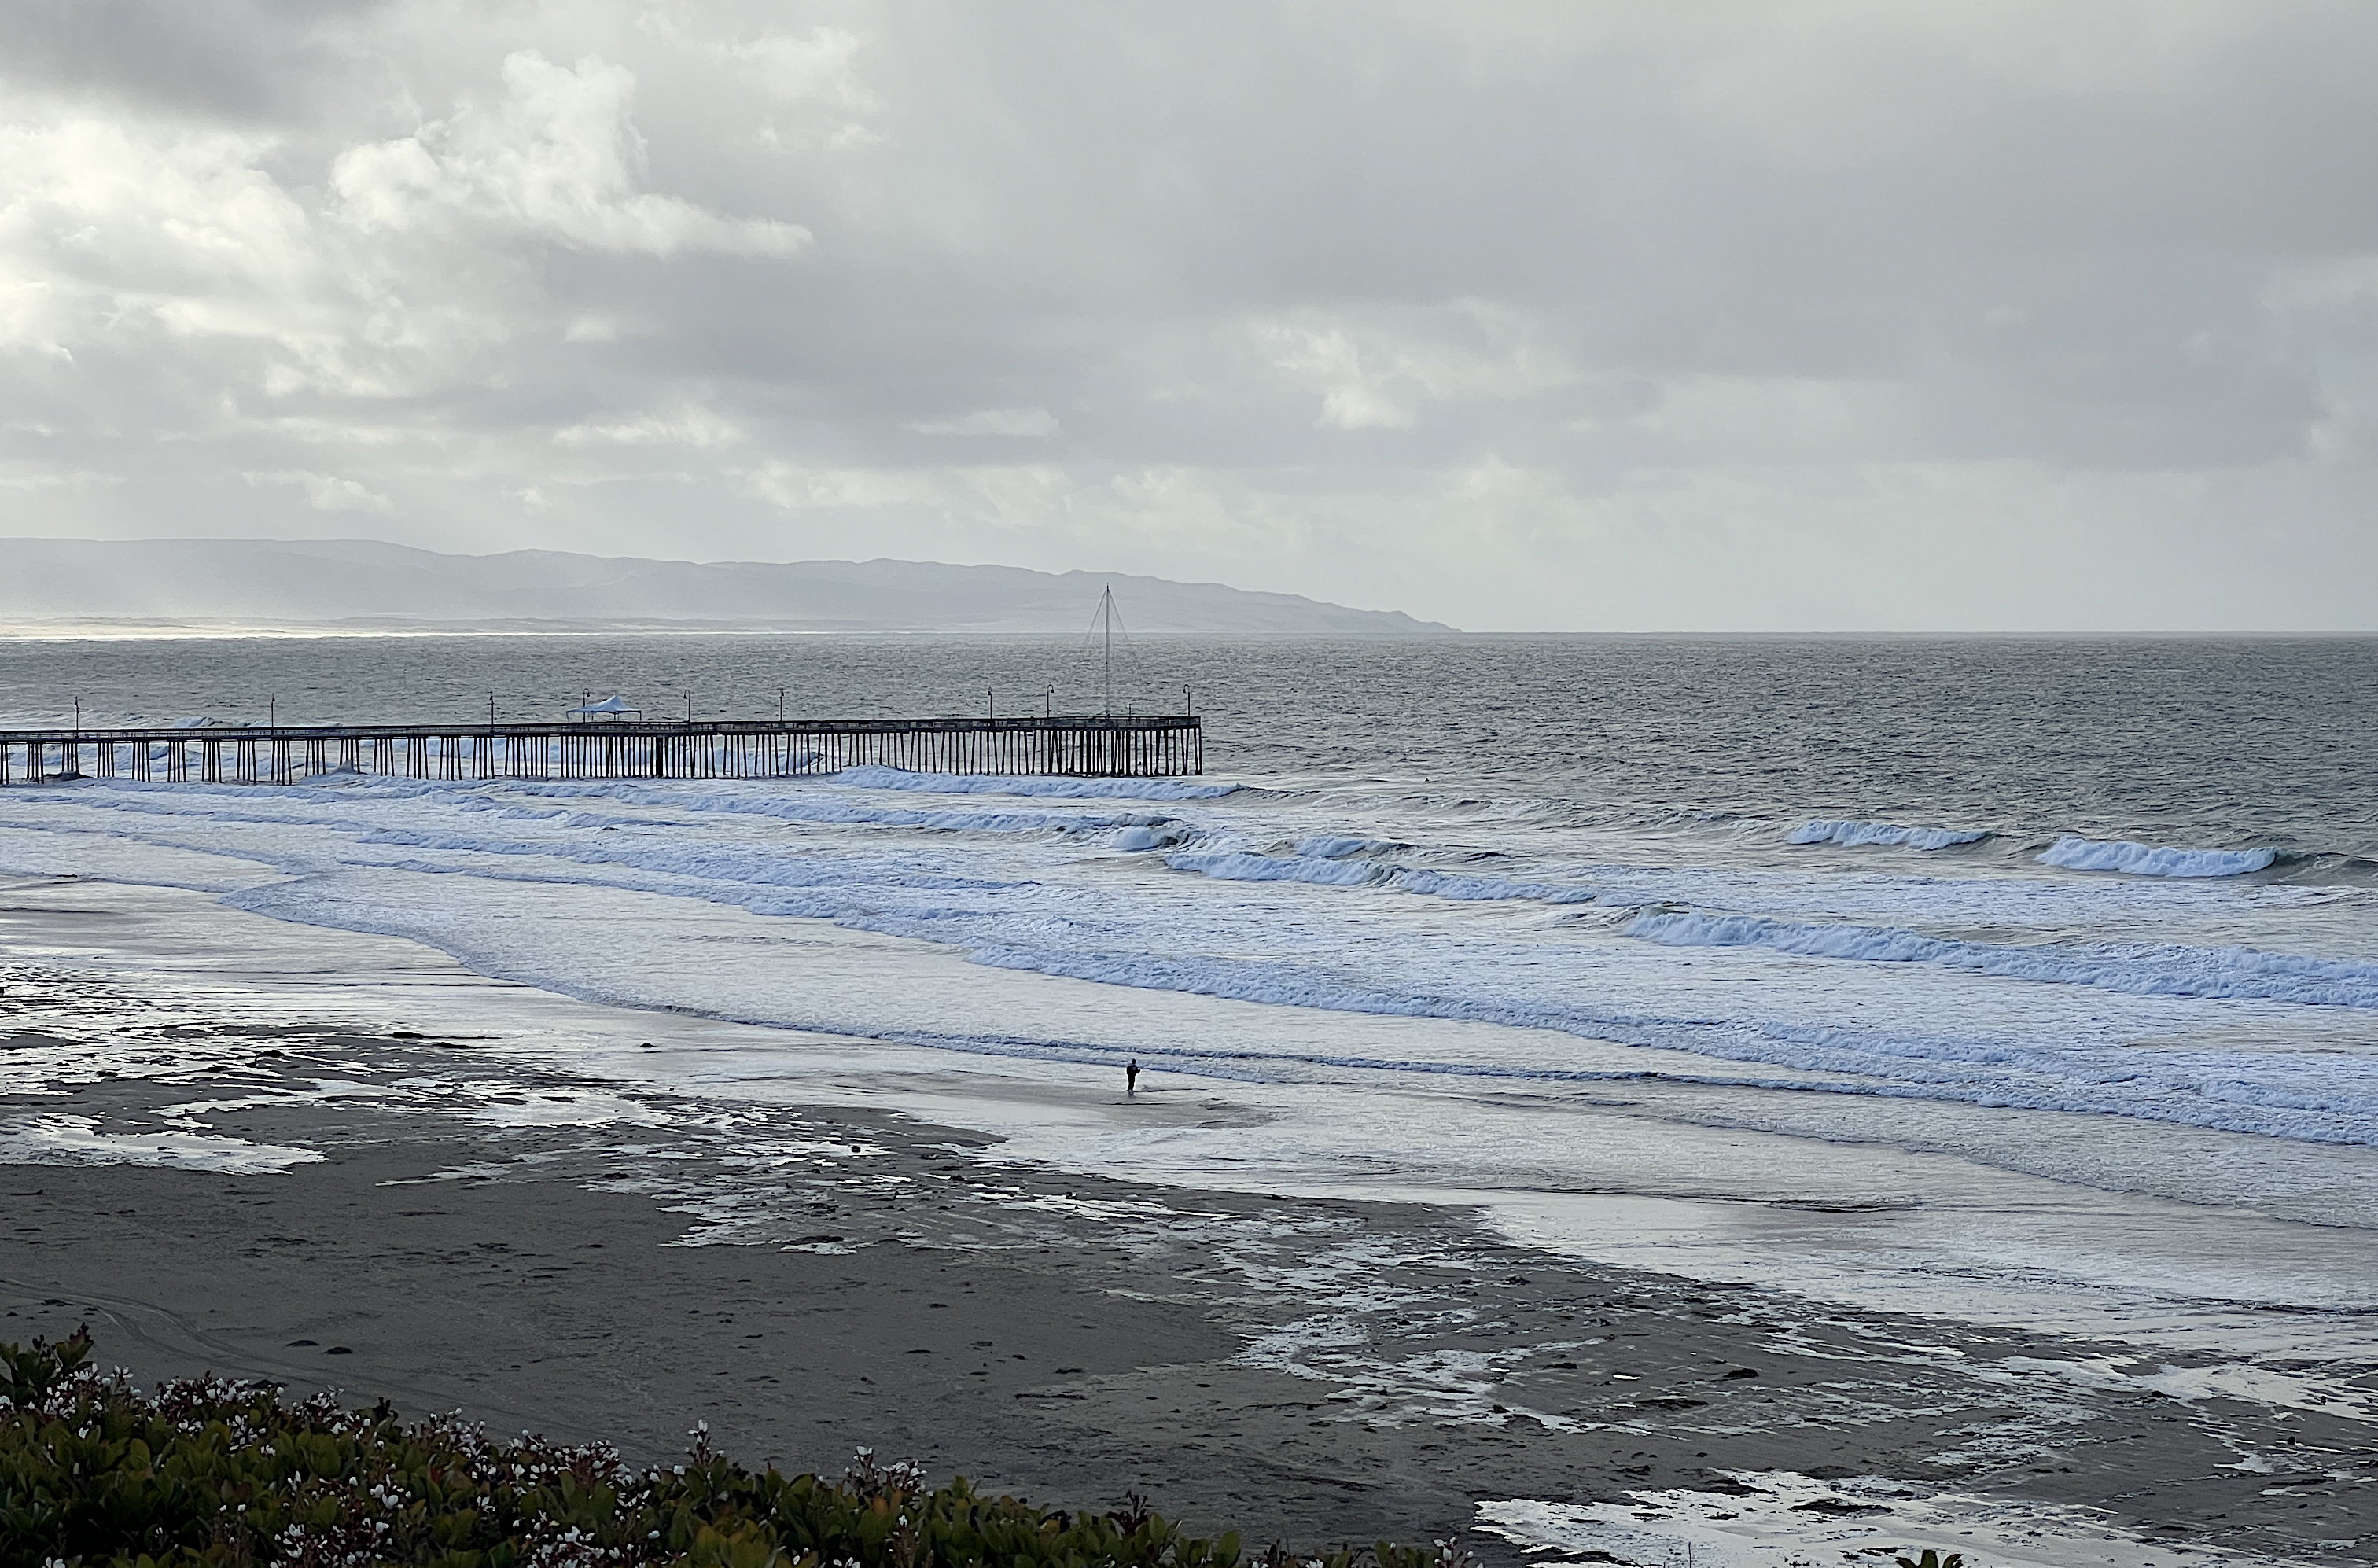 Blick vom Hotel zum Pier. Das Meer ist aufgewühlt und die Wellen werfen weisse Gischt. Wenige Leute sind am Strand zu sehen. Der Himmel ist grau.